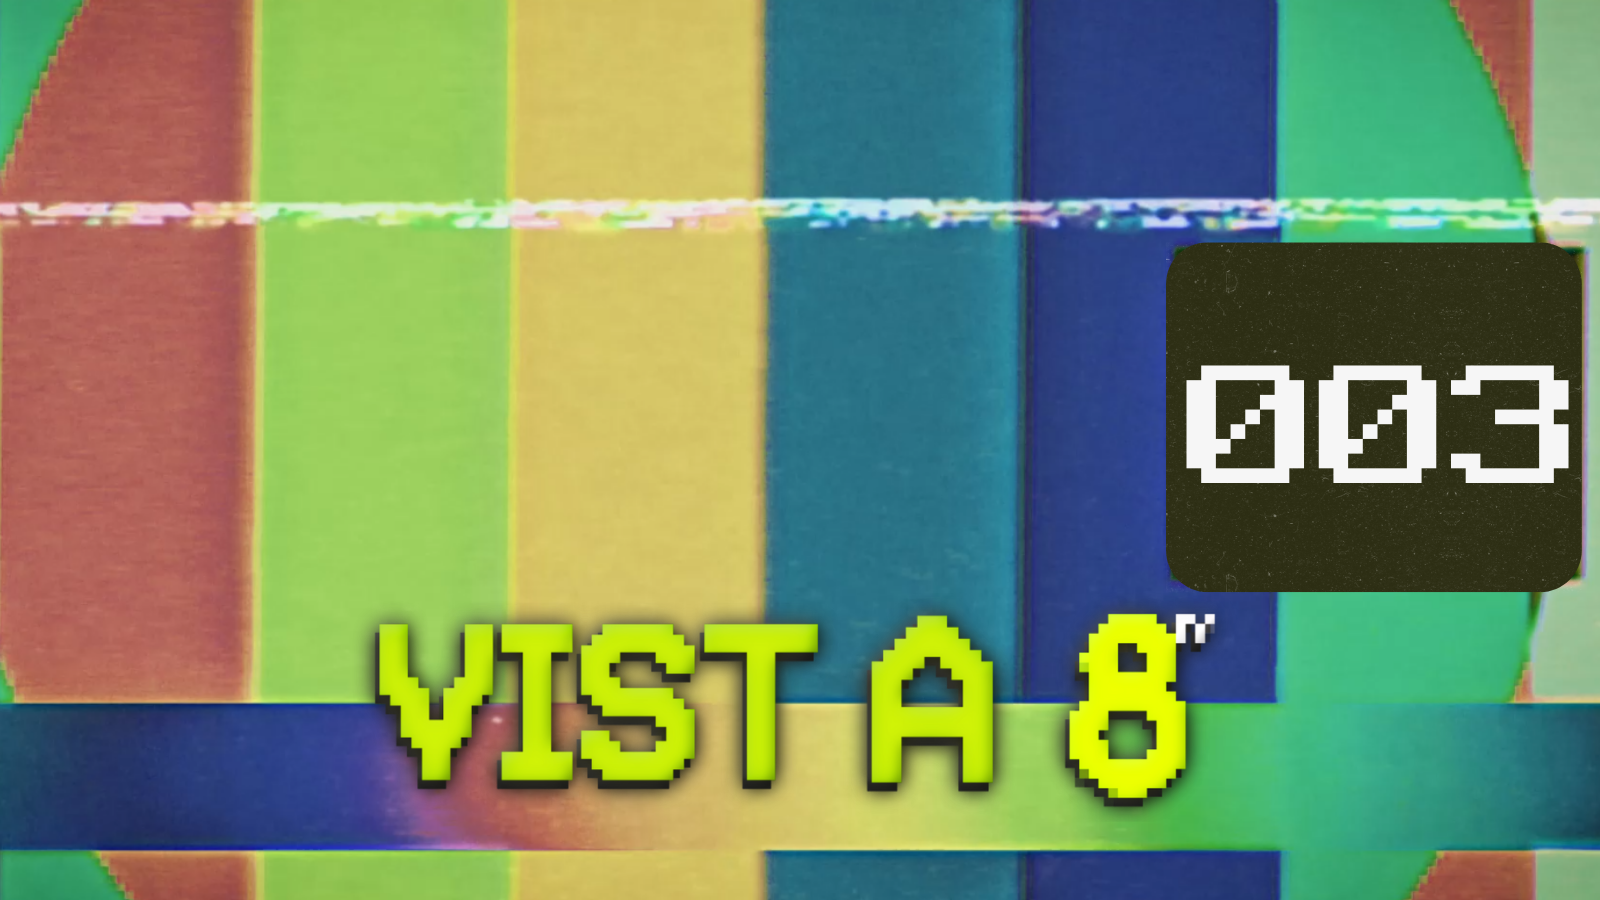 VIST A 8TV - EPISODI 3